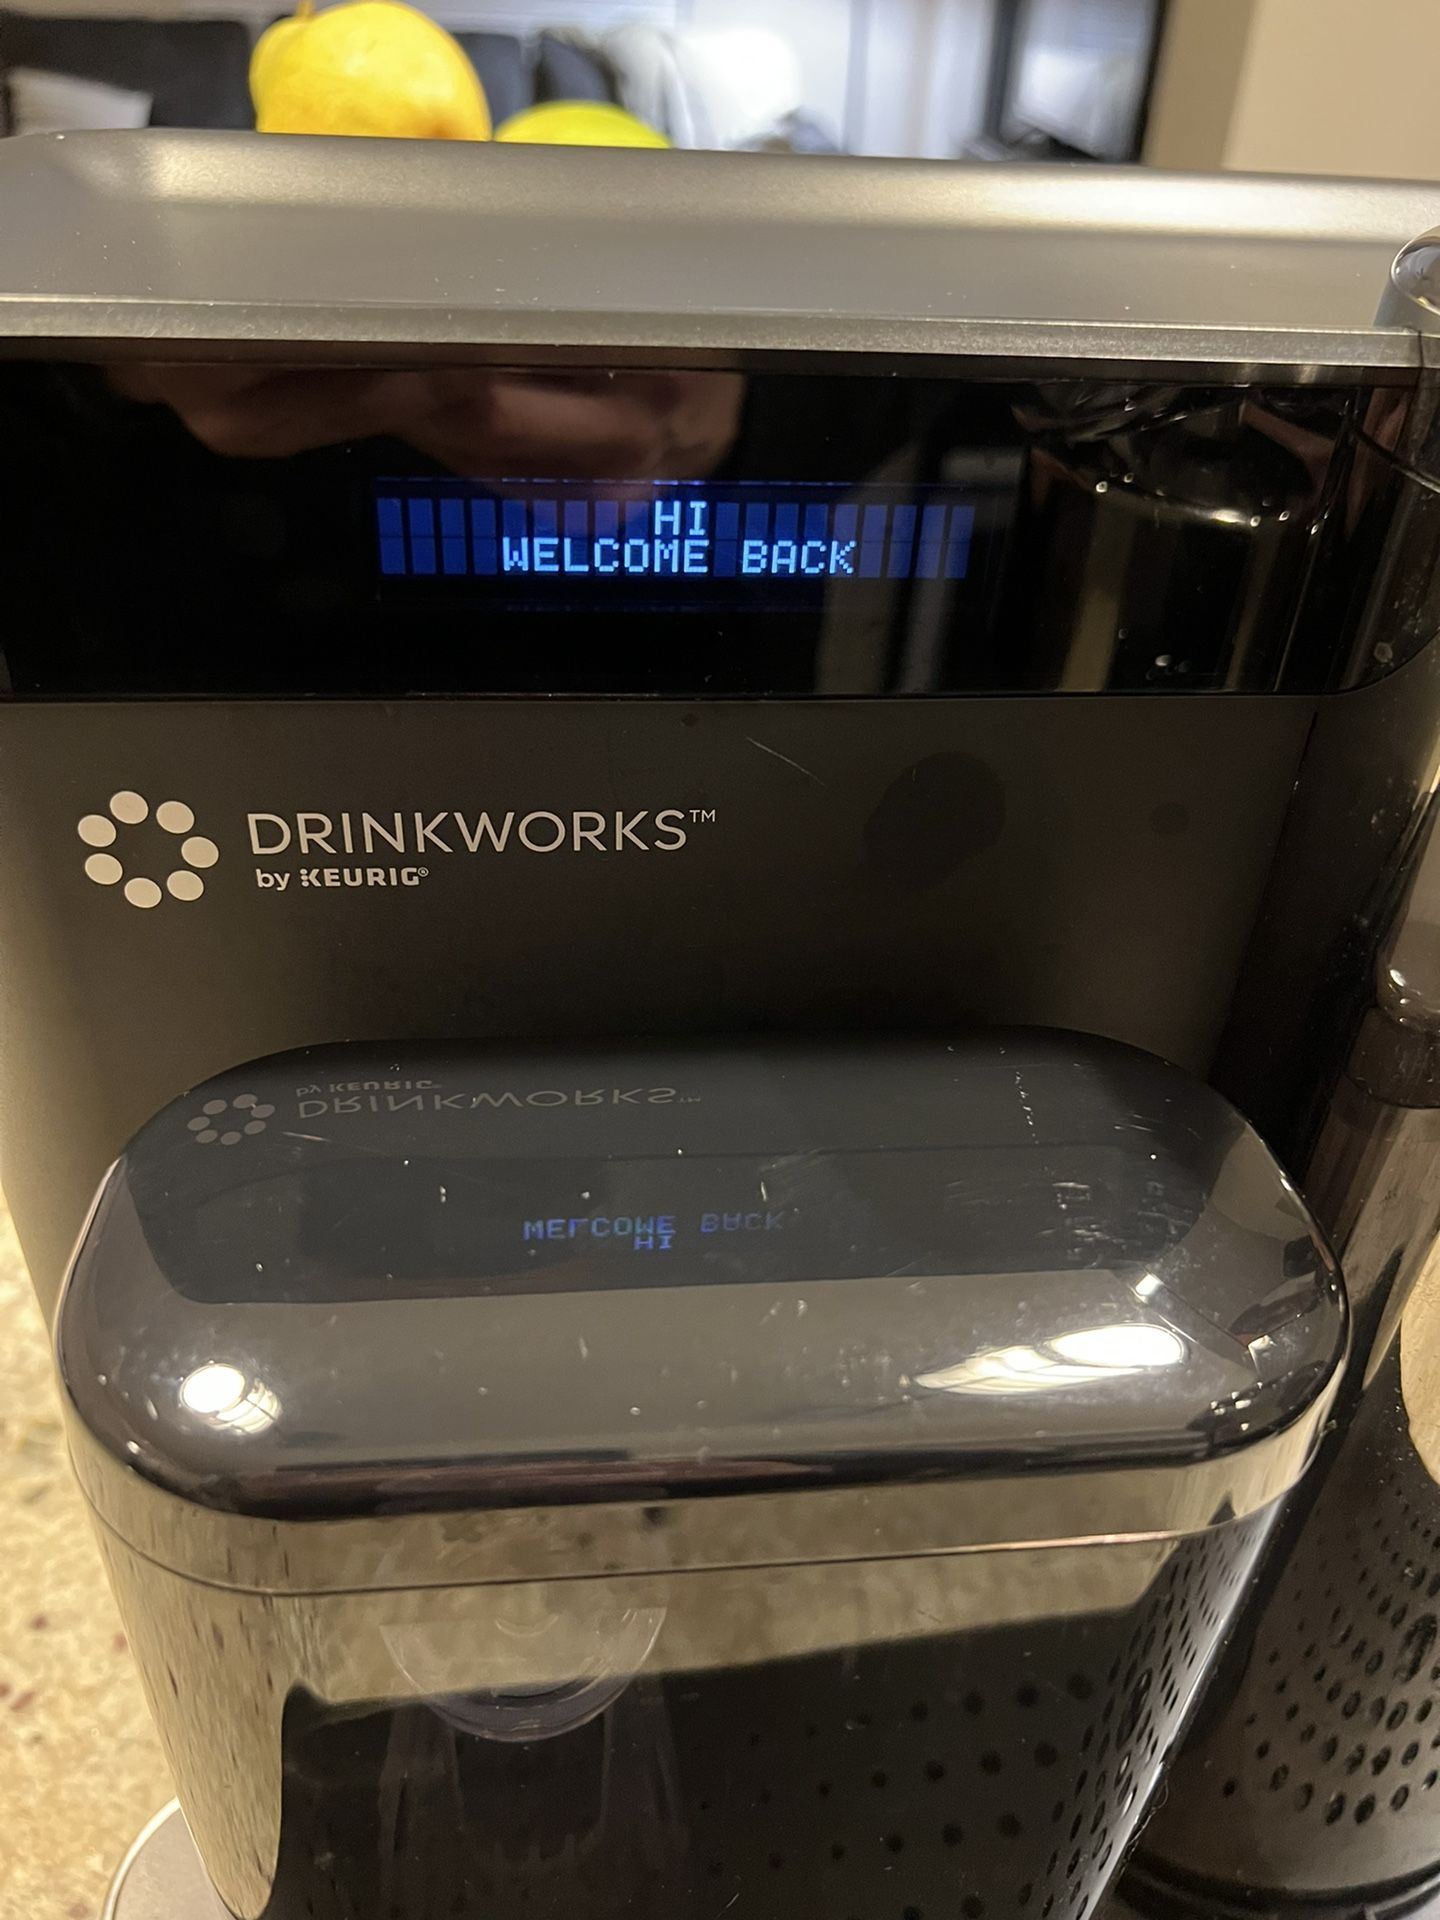  Drinkworks Home Bar Pro by Keurig, Single-Serve, Pod